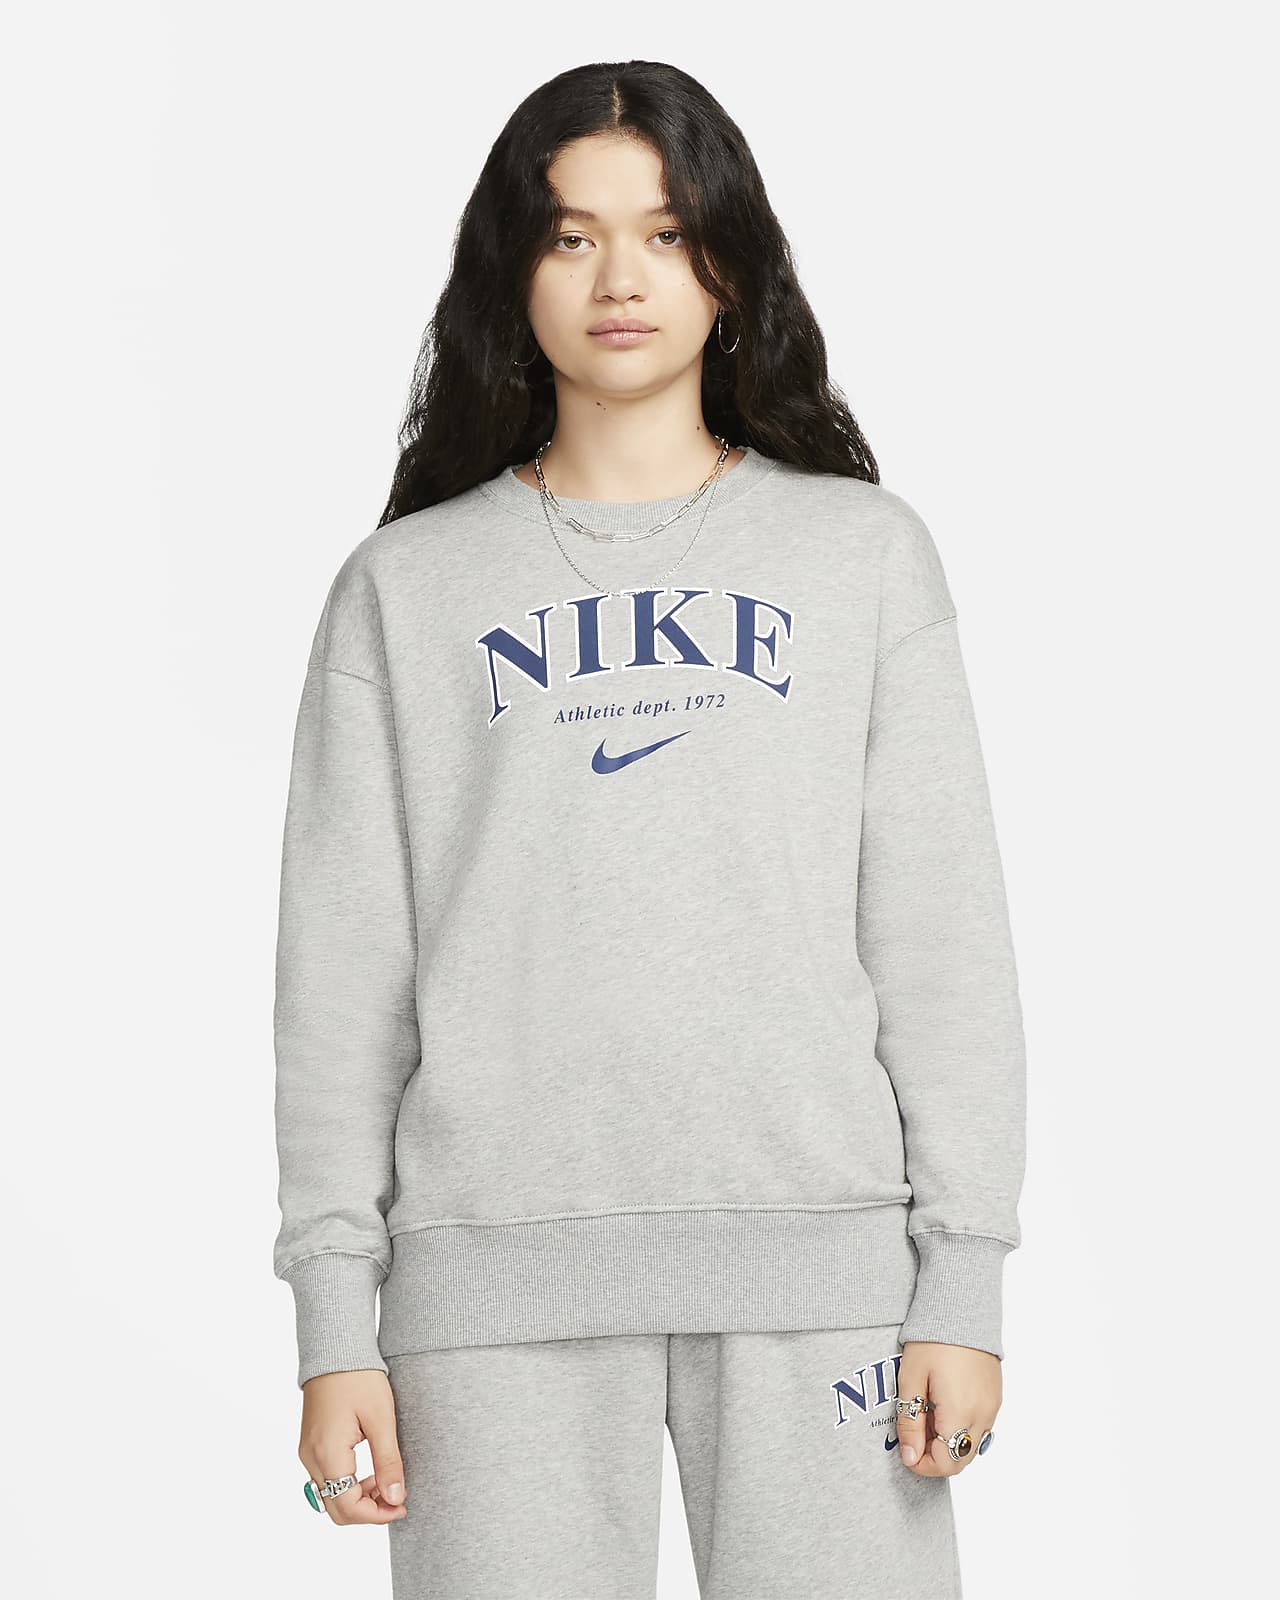 Nike Sportswear Phoenix Fleece Women's Oversized Crew-Neck Sweatshirt